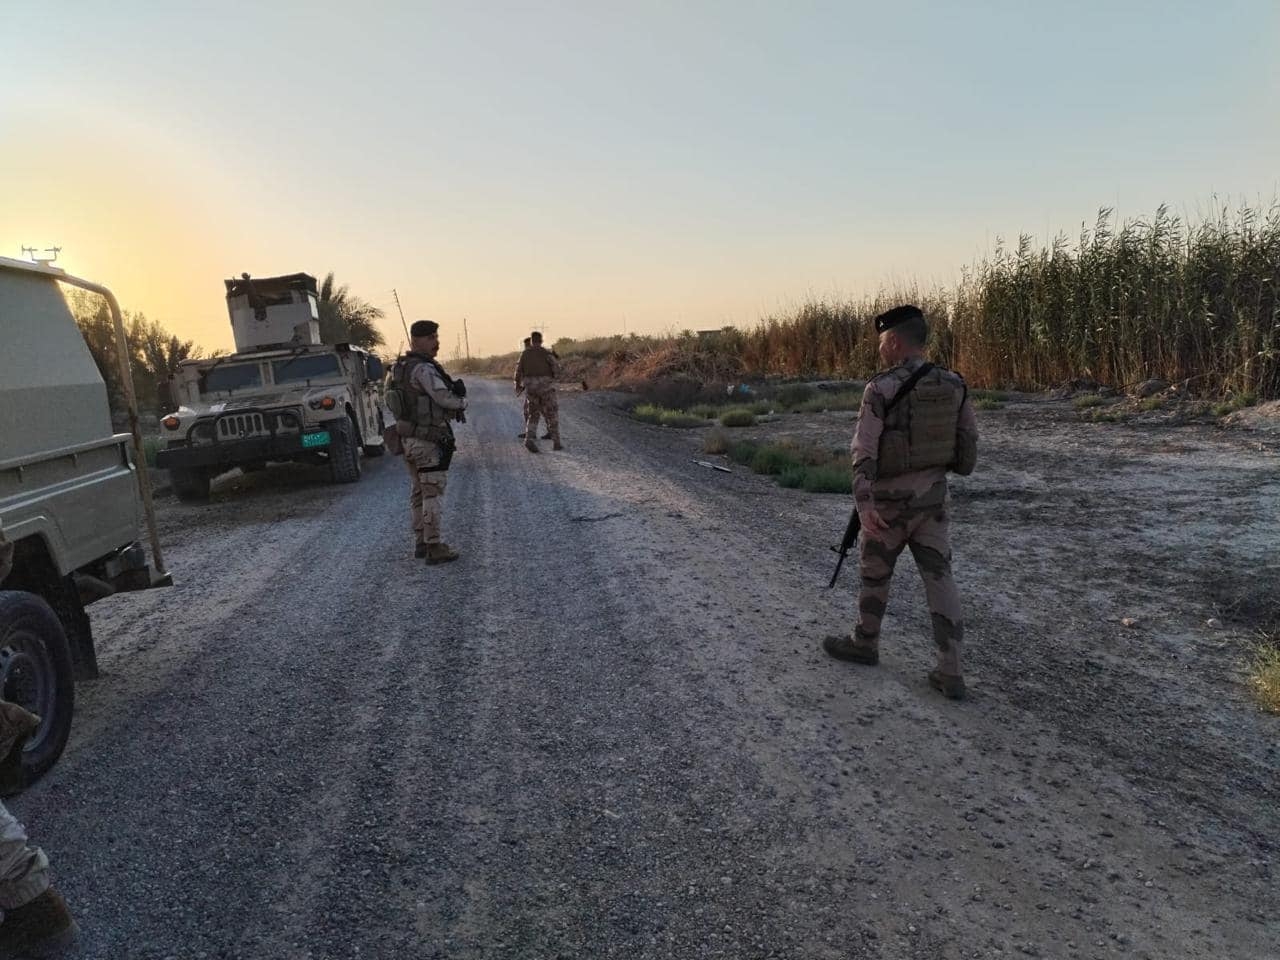 عملية استباقية لتأمين طريق الزائرين تنتهي بالإطاحة بعنصر إرهابي جنوب بغداد